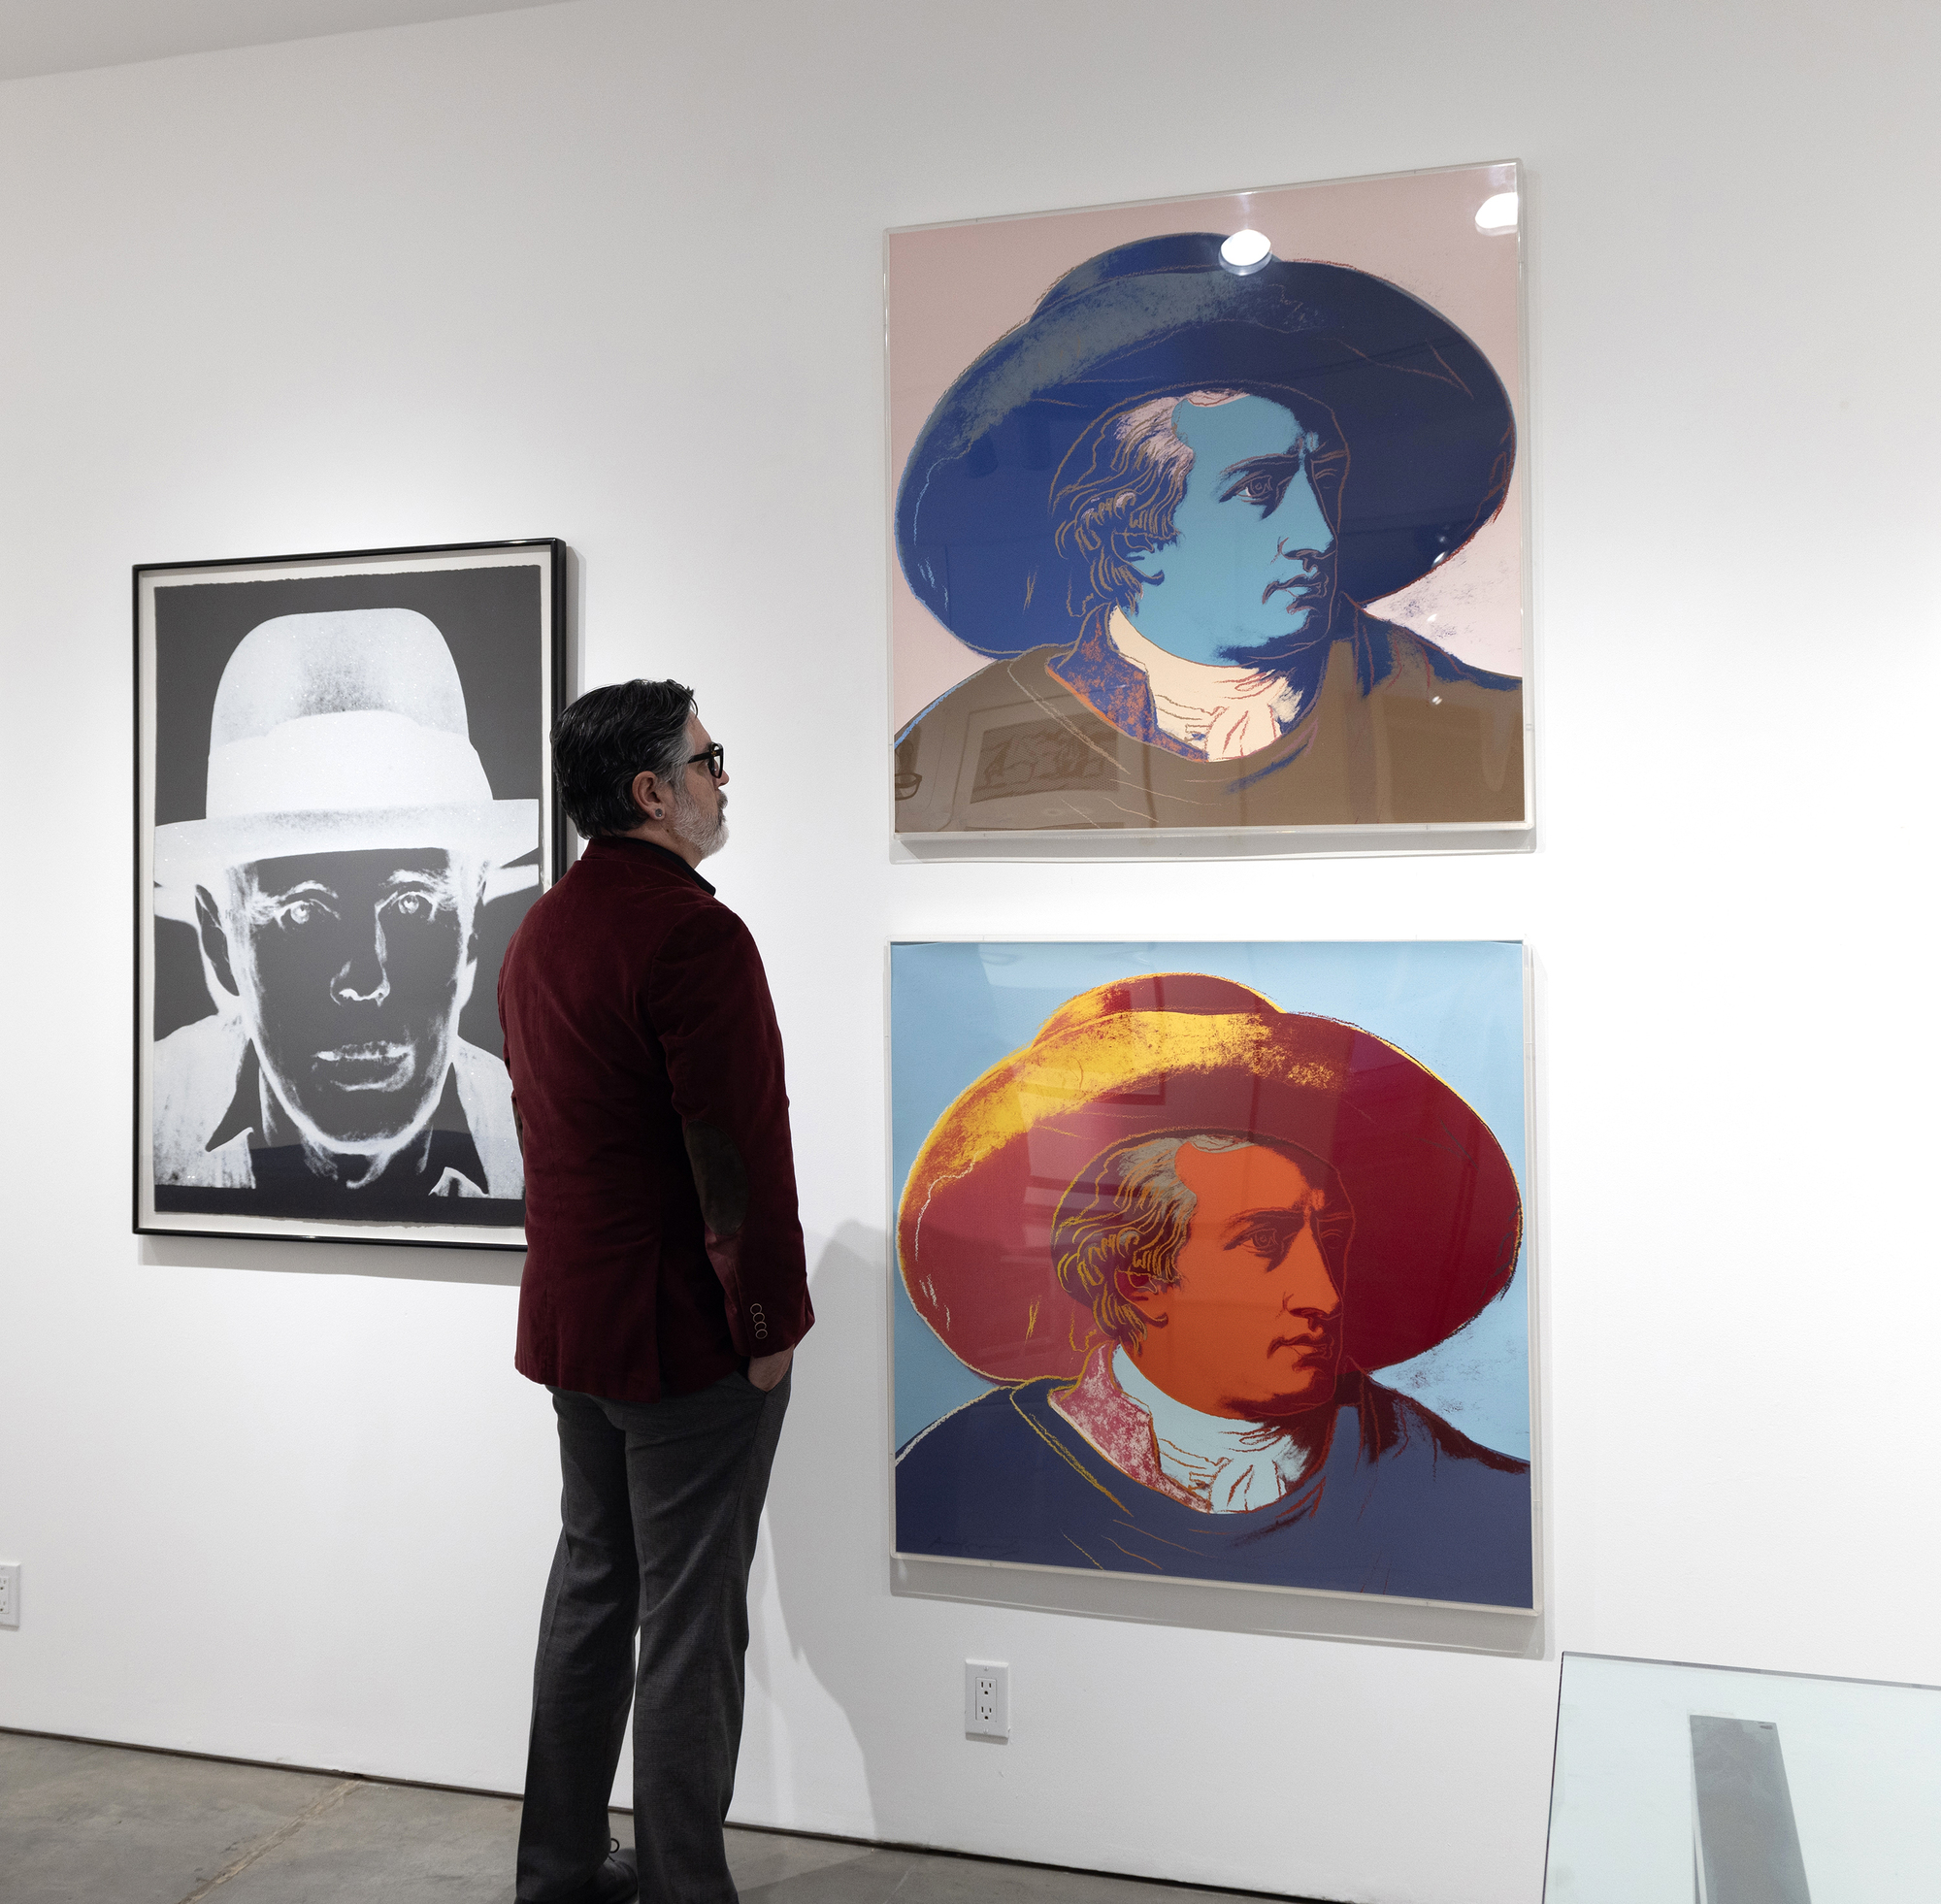 Conocido por su fascinación por la fama, las celebridades y los iconos culturales, Andy Warhol en ocasiones fue más allá de sus contemporáneos para incluir figuras históricas. De especial interés son las teorías de Goethe sobre el color, que hacían hincapié en cómo se perciben los colores y en su impacto psicológico, en contraste con la concepción newtoniana del color como fenómeno científico, basada en la física. Aunque no existe una relación directa entre la teoría del color de Goethe y el hecho de que Warhol se inspirara directamente en él para elegirlo como tema, sí destaca temáticamente la forma en que consideramos que el arte de Warhol se relaciona con las tradiciones históricas para simbolizar un vínculo entre sus respectivos campos y épocas. En este sentido, la obra sirve de homenaje y colaboración intertemporal, al vincular el lenguaje visual de Warhol con la conciencia de Goethe del color como elemento potente y estimulante de la percepción.